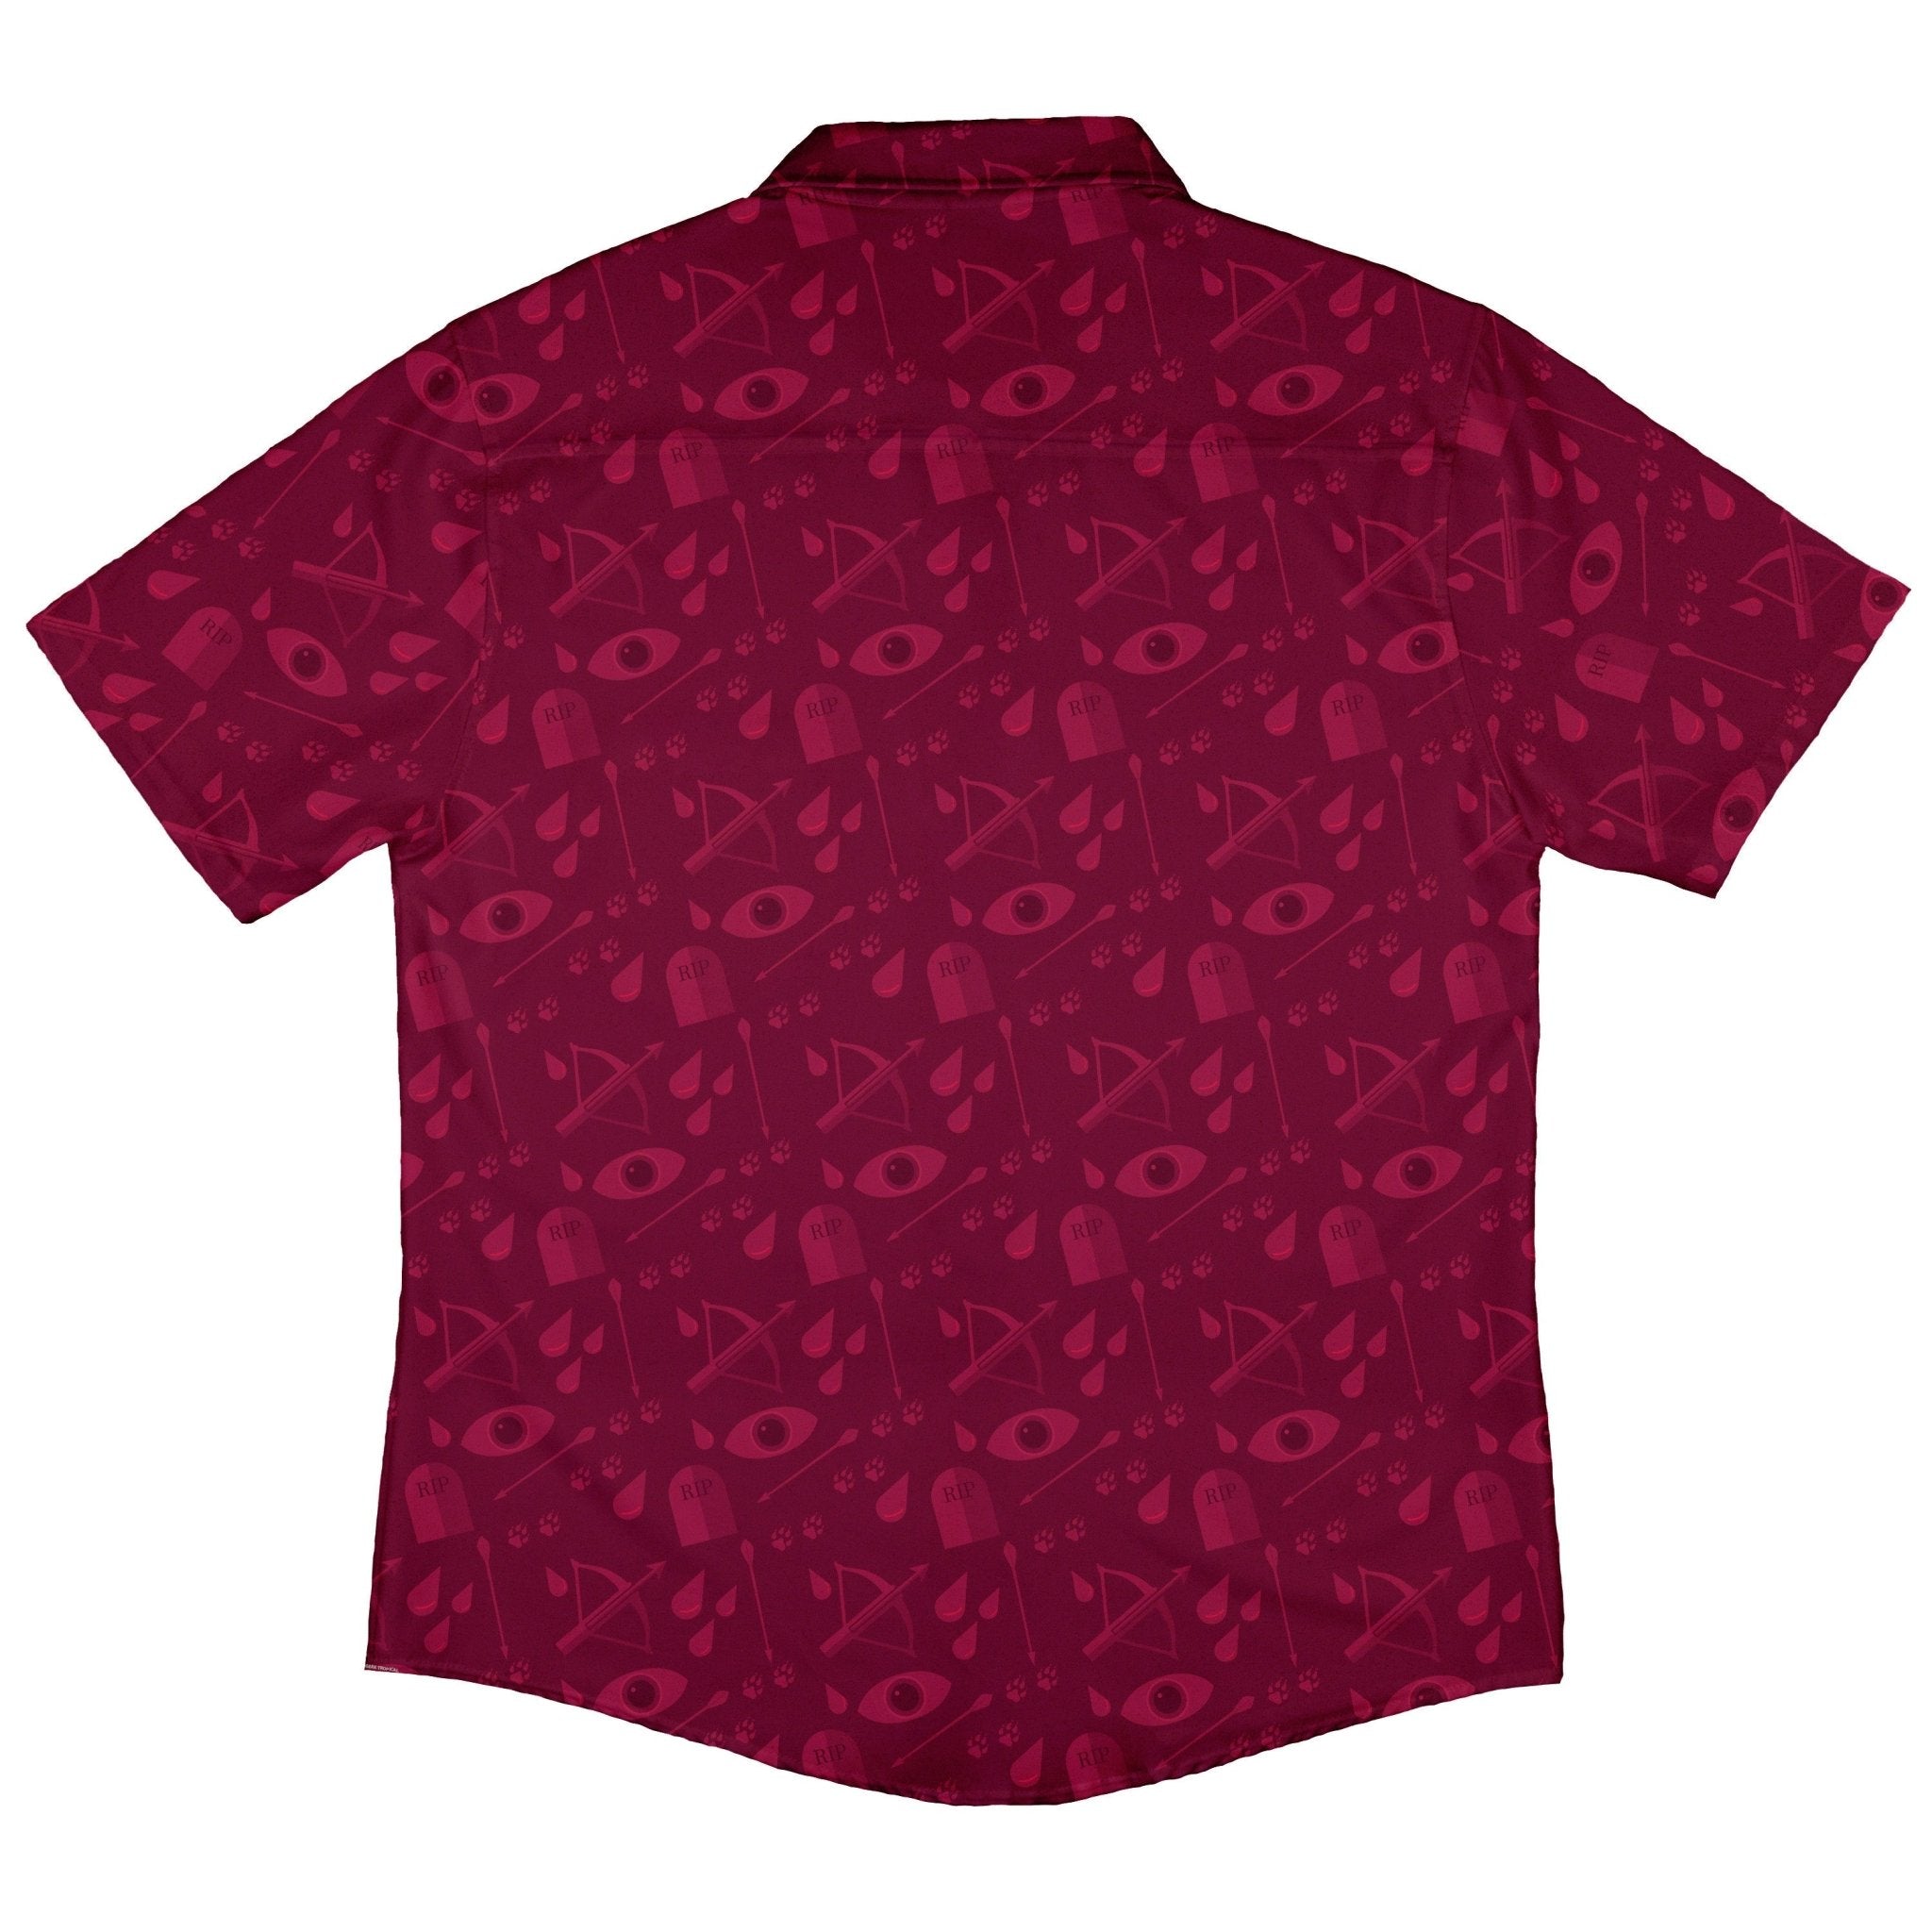 Dnd Blood Hunter Class Button Up Shirt - adult sizing - Design by Heather Davenport - dnd & rpg print